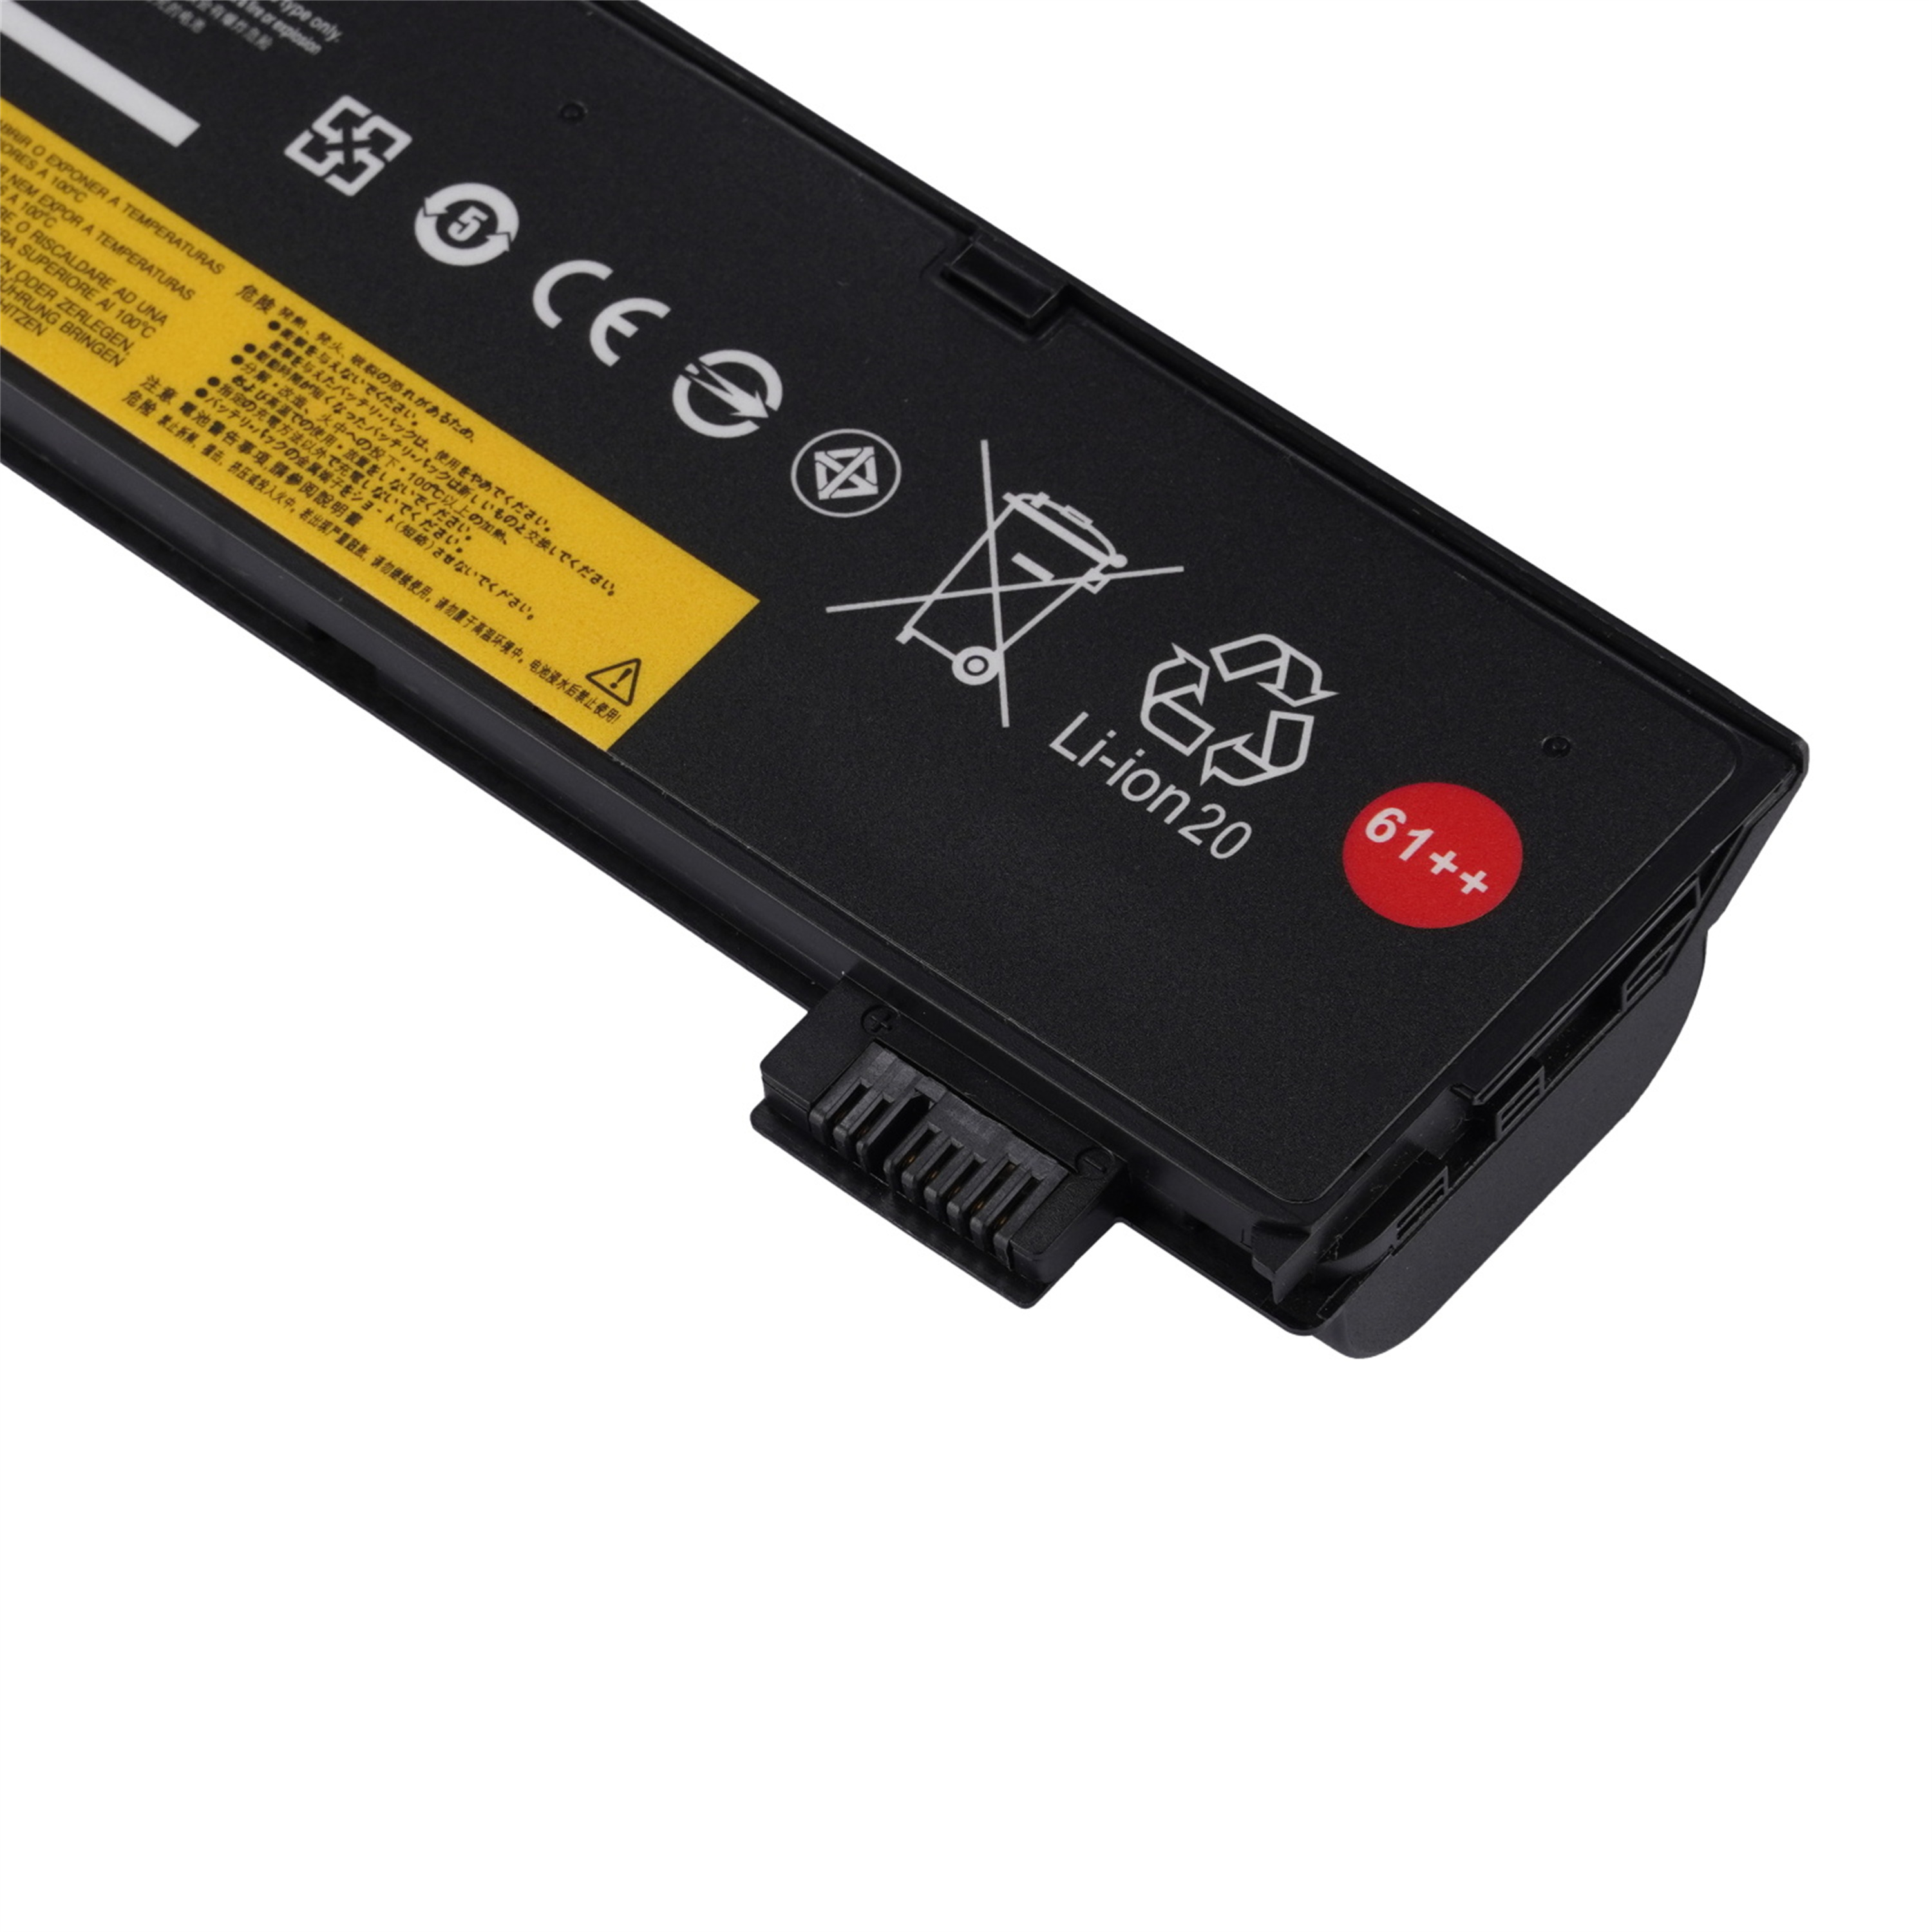 01AV427 rechargeable lithium ion Notebook battery Laptop battery LENOVO T470 T480 T570 T580 Series. 11.1V 72WH 6600MAH